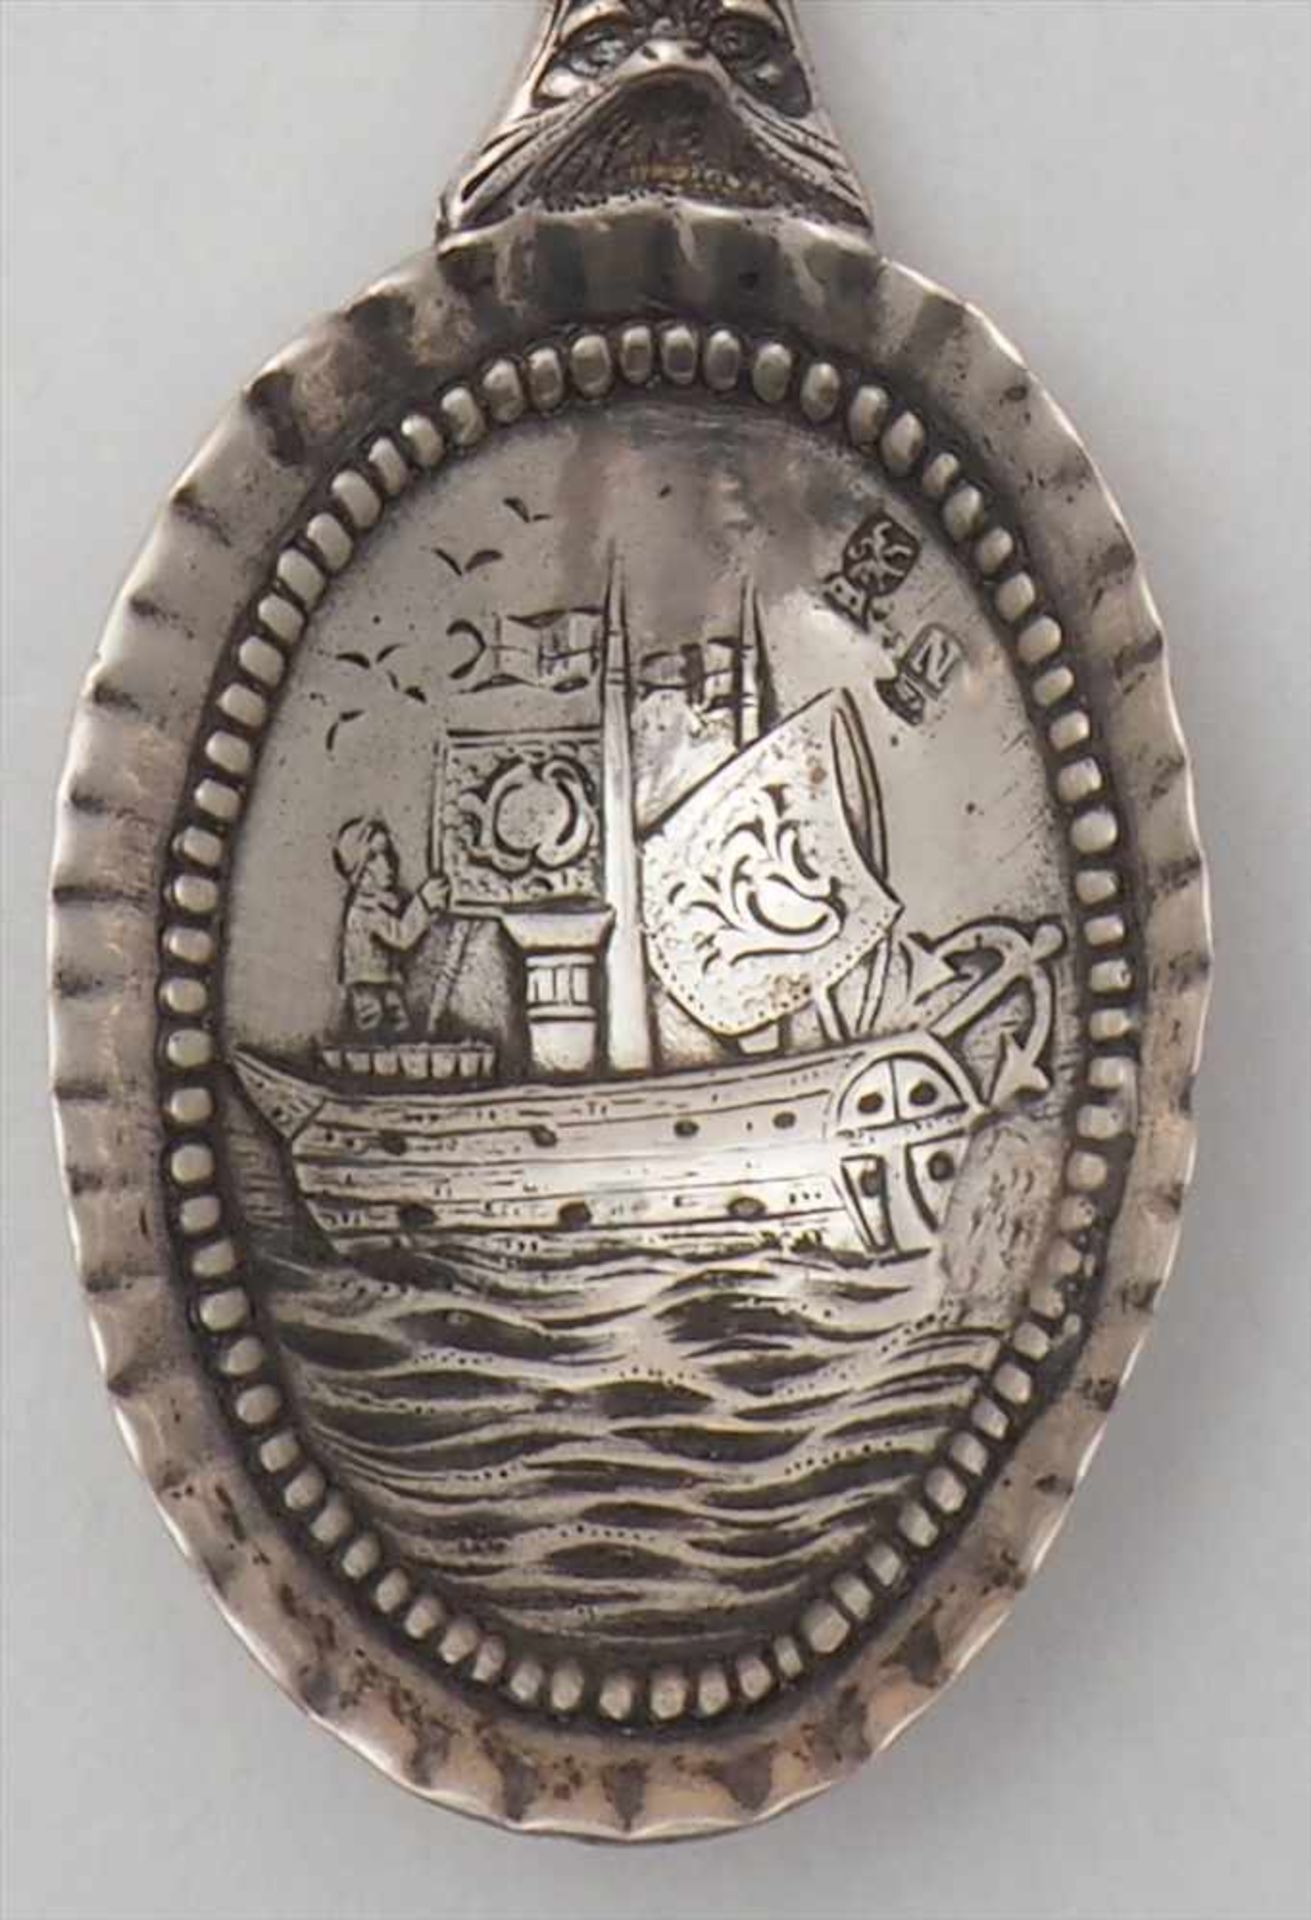 Zierlöffel SilberNiederlande, 18. Jh. In der Laffe Darstellung der Schiffsfahrt, von Perldekor - Bild 6 aus 6